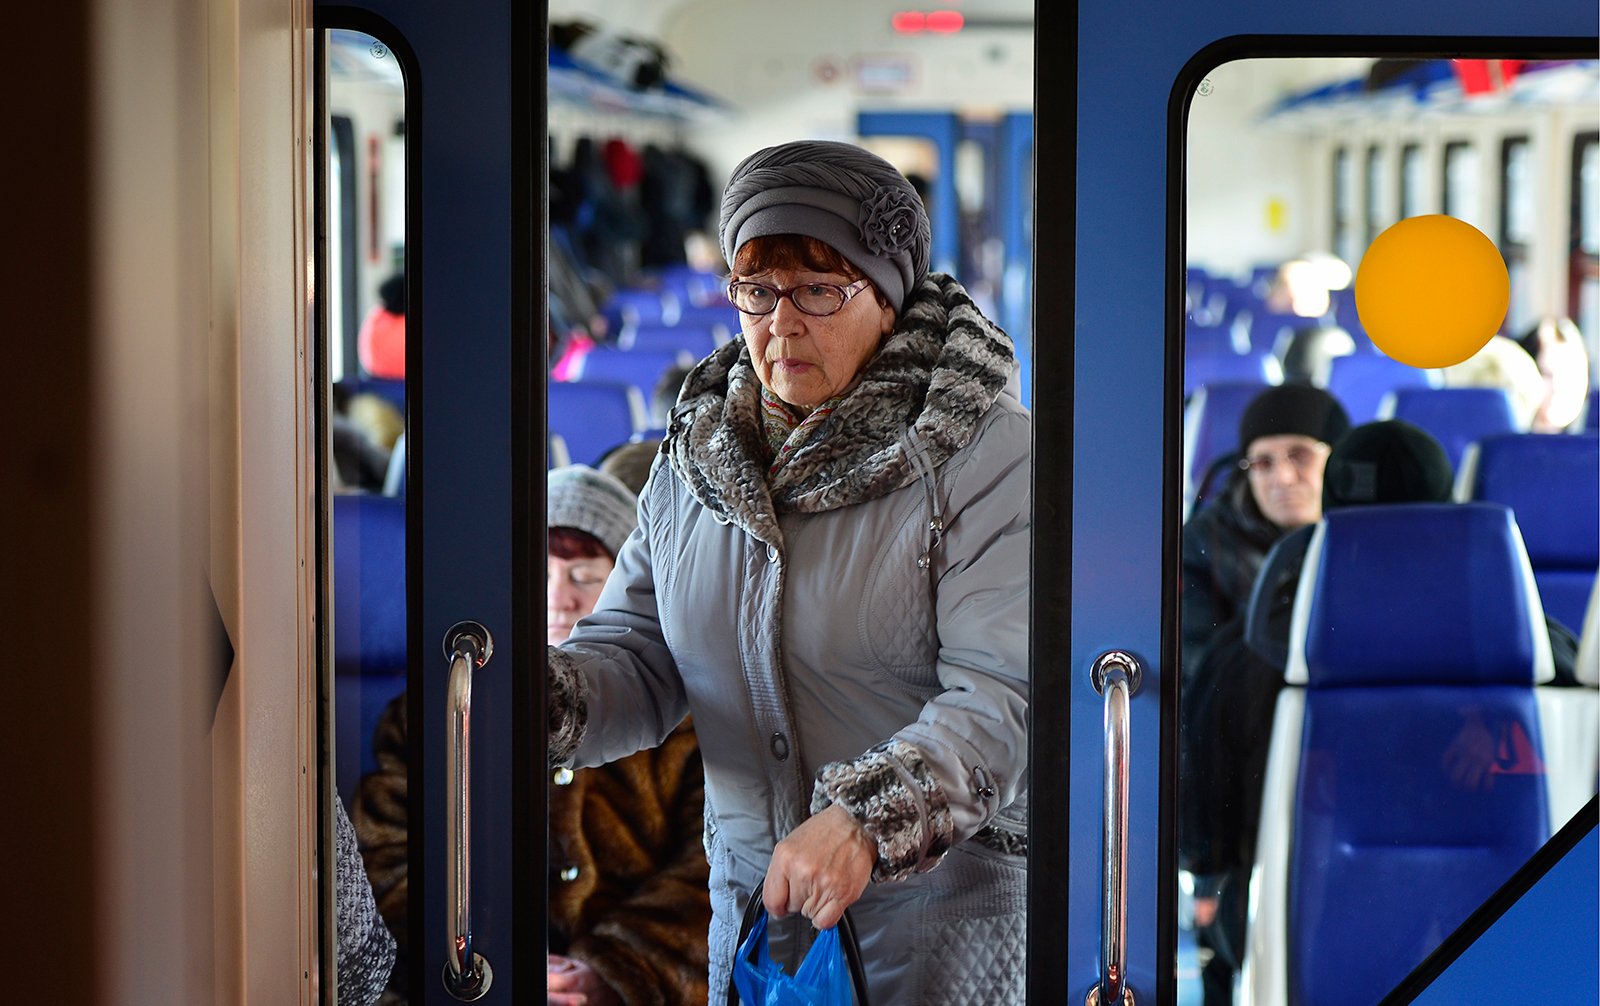 Бесплатный проезд для пенсионеров в московской области. Пенсионеры в электричке. Пожилые люди в общественном транспорте. Пенсионеры в общественном транспорте. Пенсионеры в метро.